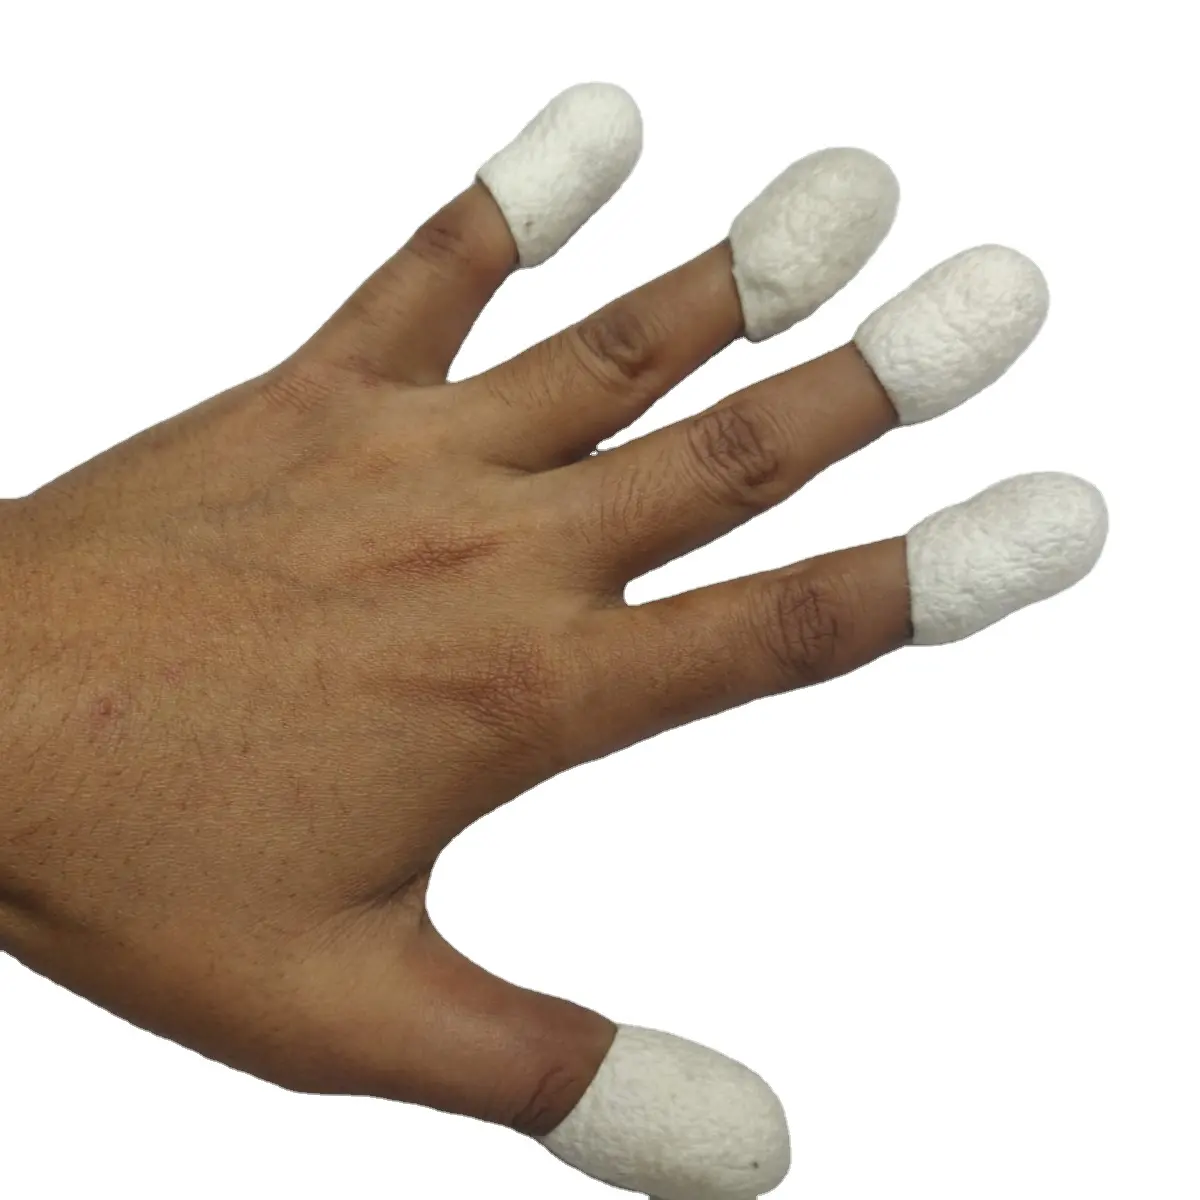 धागे के लिए सफेद शहतूत रेशम कोकून, कताई रूविंग धागे कला और मालिश बनाने के लिए त्वचा की देखभाल के लिए उपलब्ध कट और अनकट कोकून